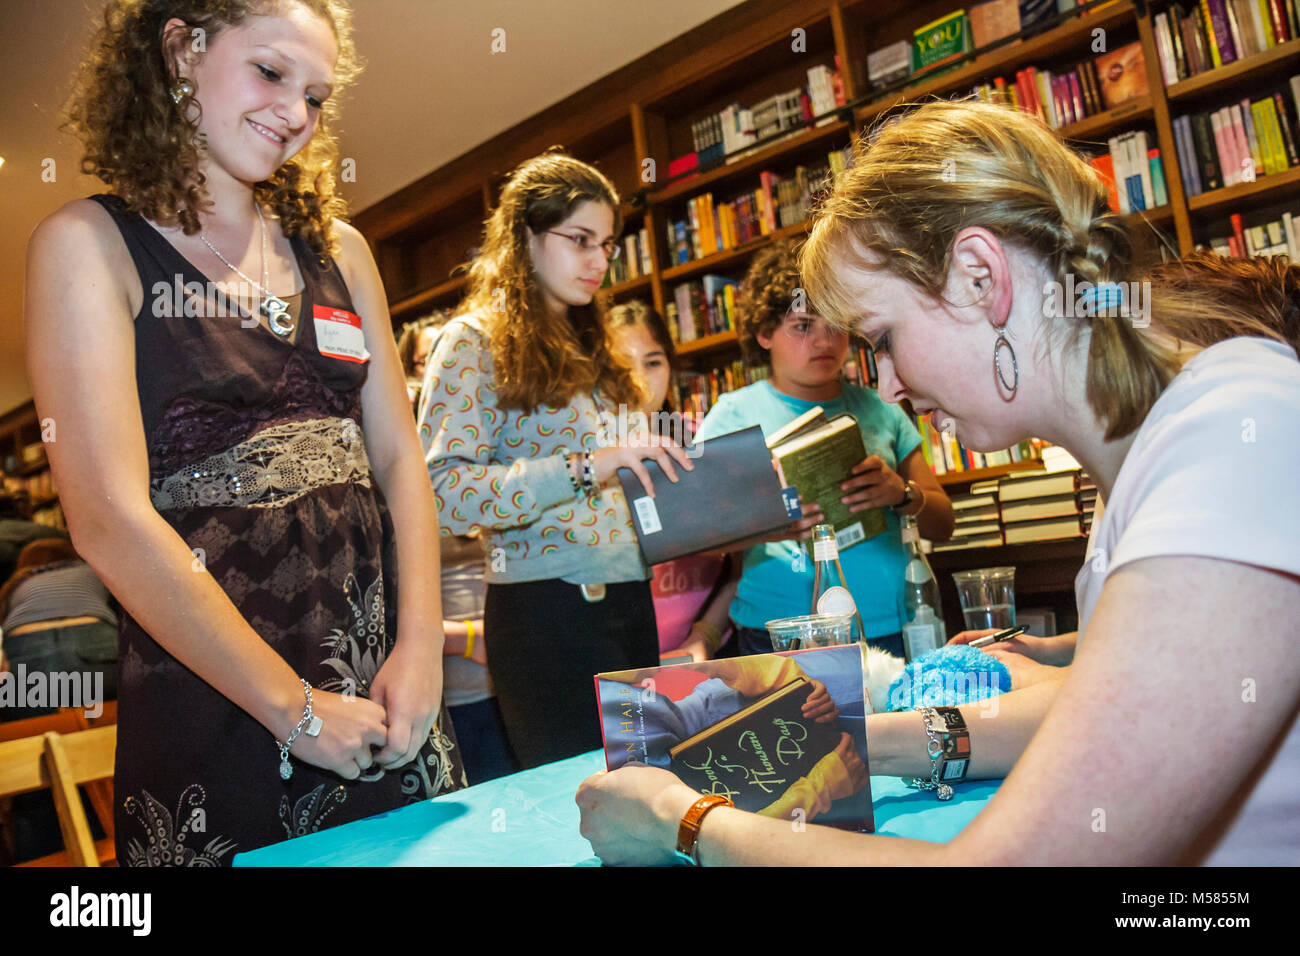 Miami Florida,Coral Gables,Libros y Libros,Conozca a los Autores,Shannon Hale,autores jóvenes de ficción para adultos,literatura,adolescentes adolescentes adolescentes niñas,signo Foto de stock